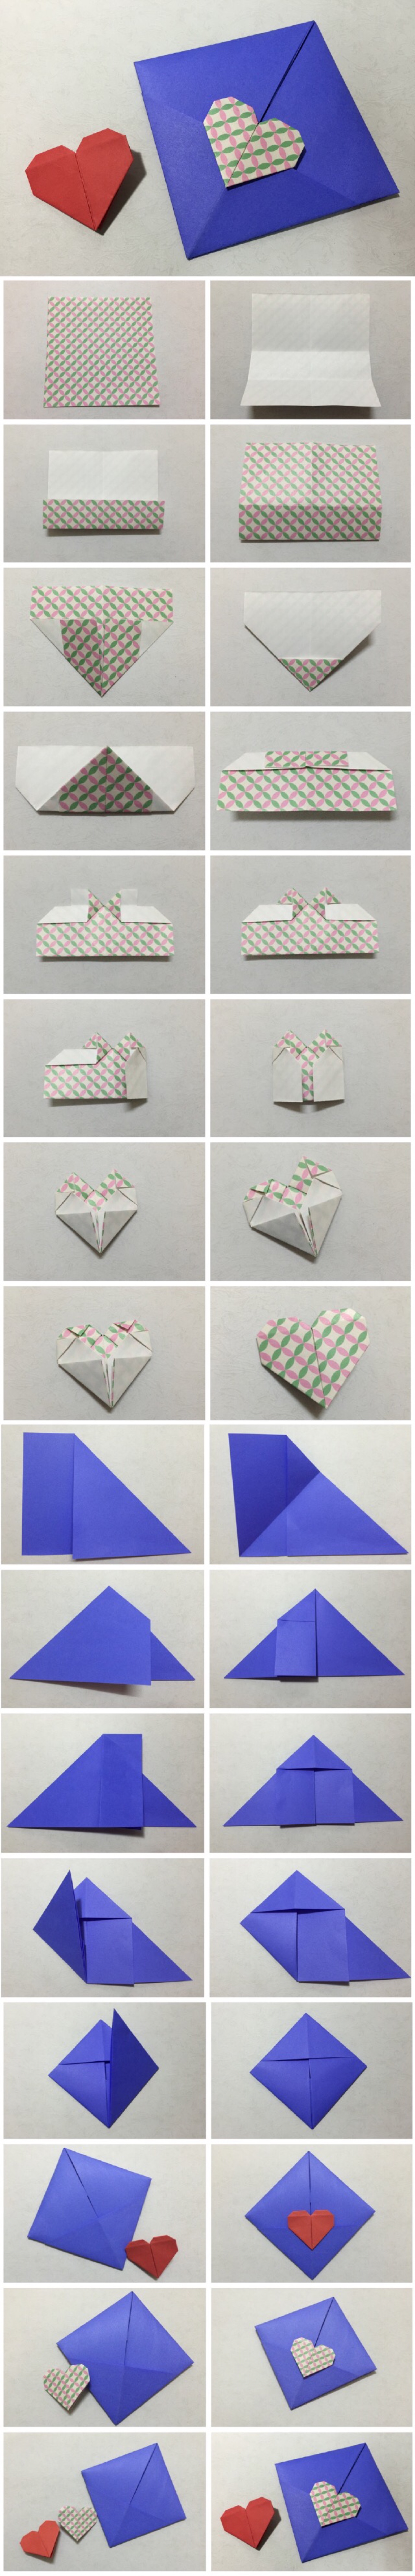 爱心 信纸折法(手工习作),材料:一张15cmx15cm的彩色花纹纸,一张a4